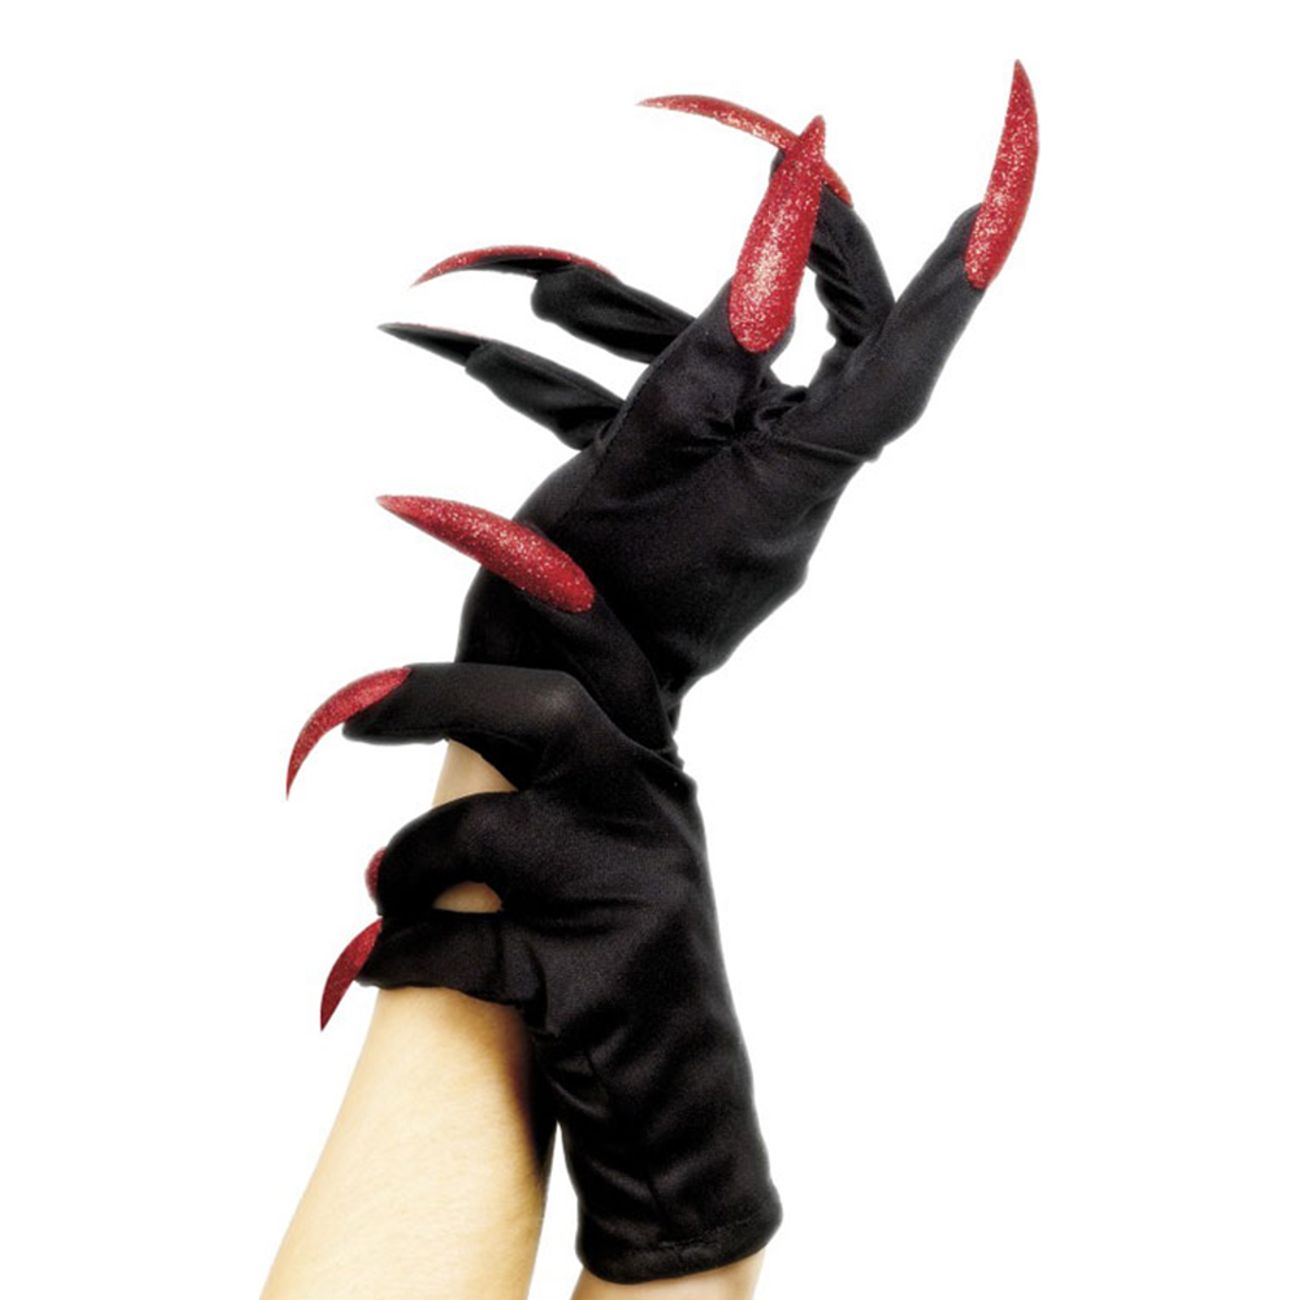 svarta-handskar-med-naglar-22844-2